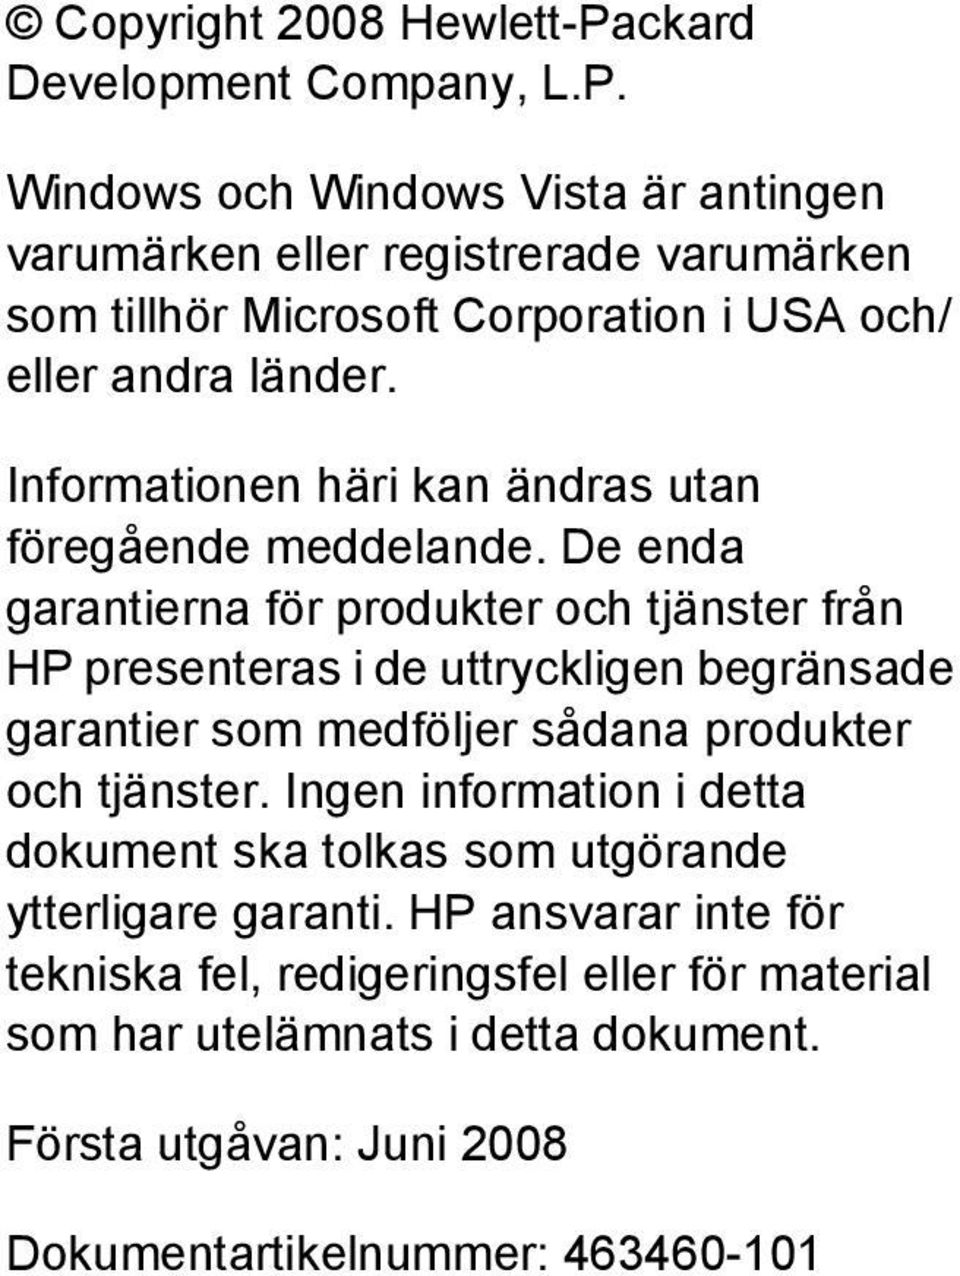 Windows och Windows Vista är antingen varumärken eller registrerade varumärken som tillhör Microsoft Corporation i USA och/ eller andra länder.